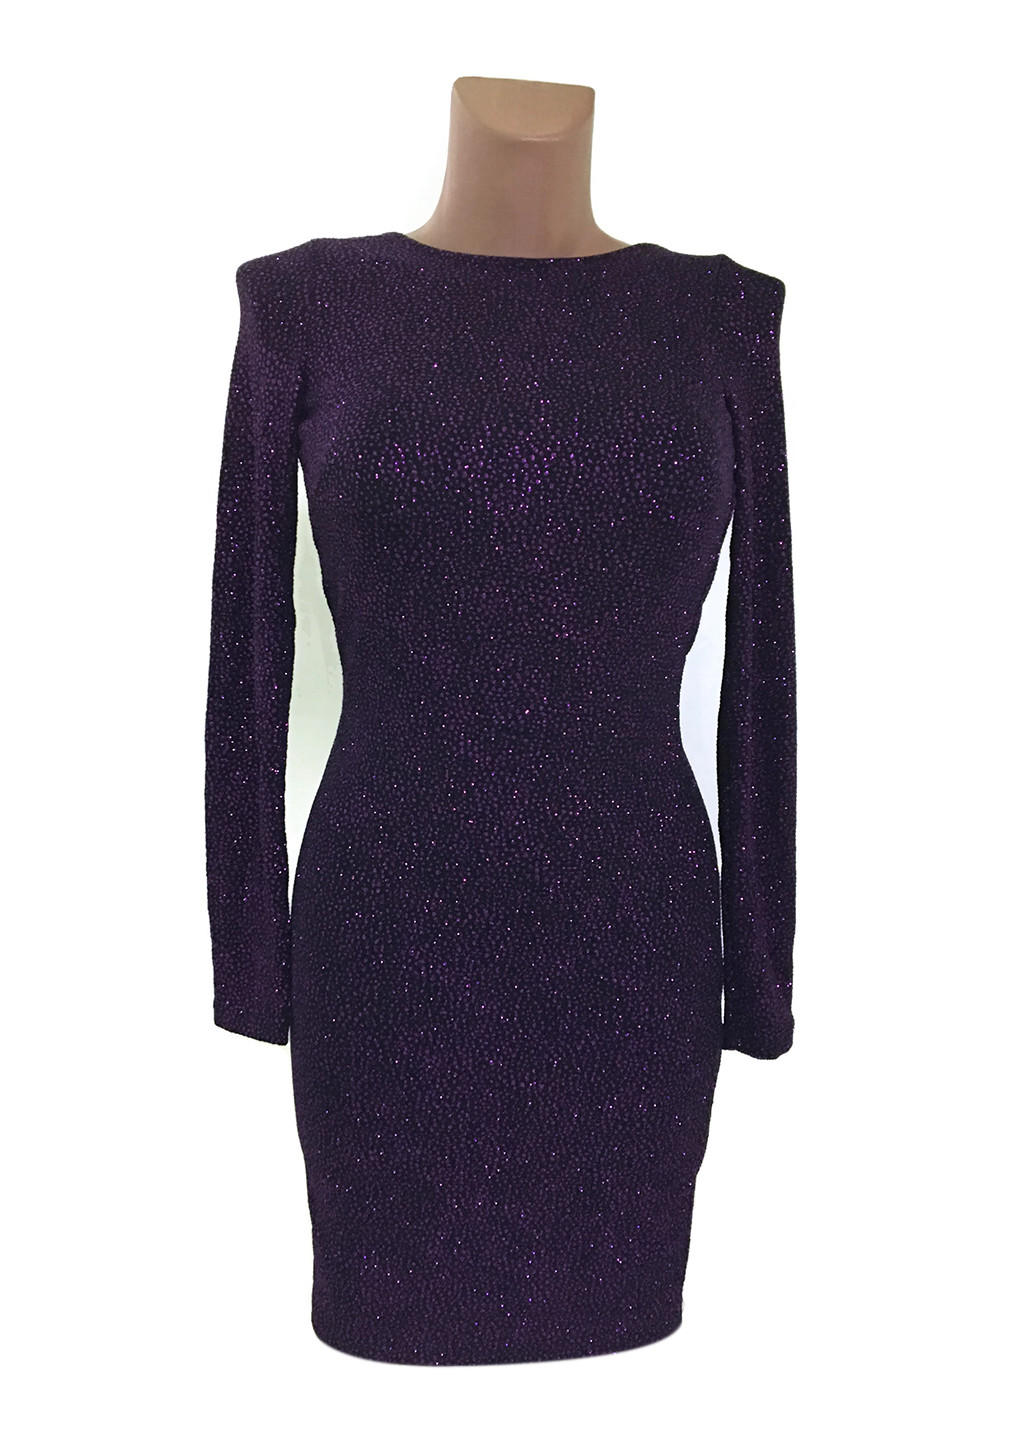 Фиолетовое коктейльное платье футляр H&M однотонное